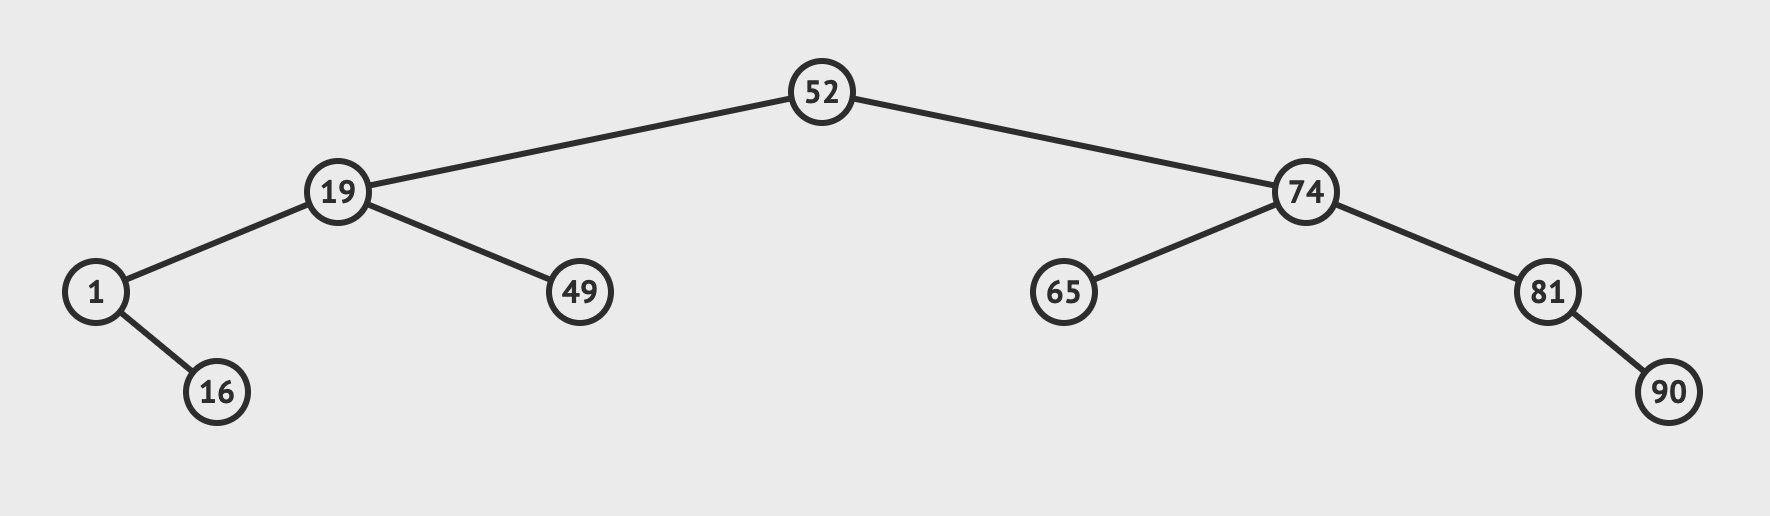 Figure 3: A binary tree